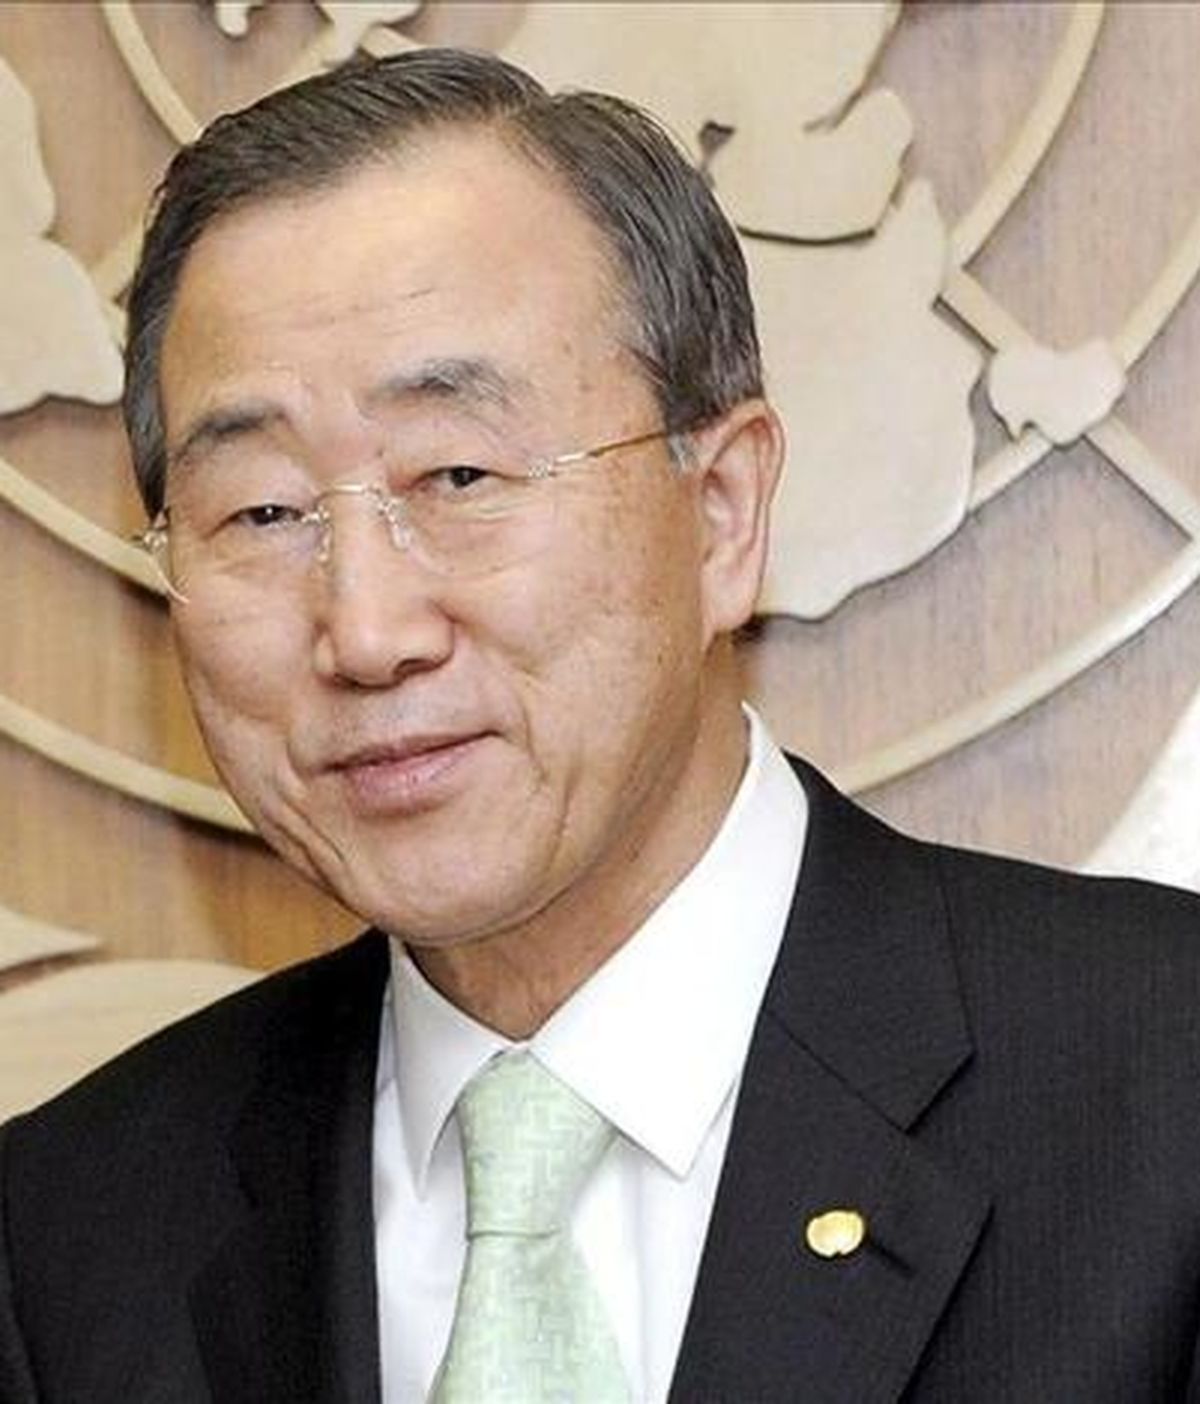 El secretario general de la ONU, Ban Ki-moon, destacó que está previsto que para 2050 alrededor de 200 millones de personas se verán obligadas a migrar de sus países a causa de la desertificación y el cambio climático. EFE/Archivo